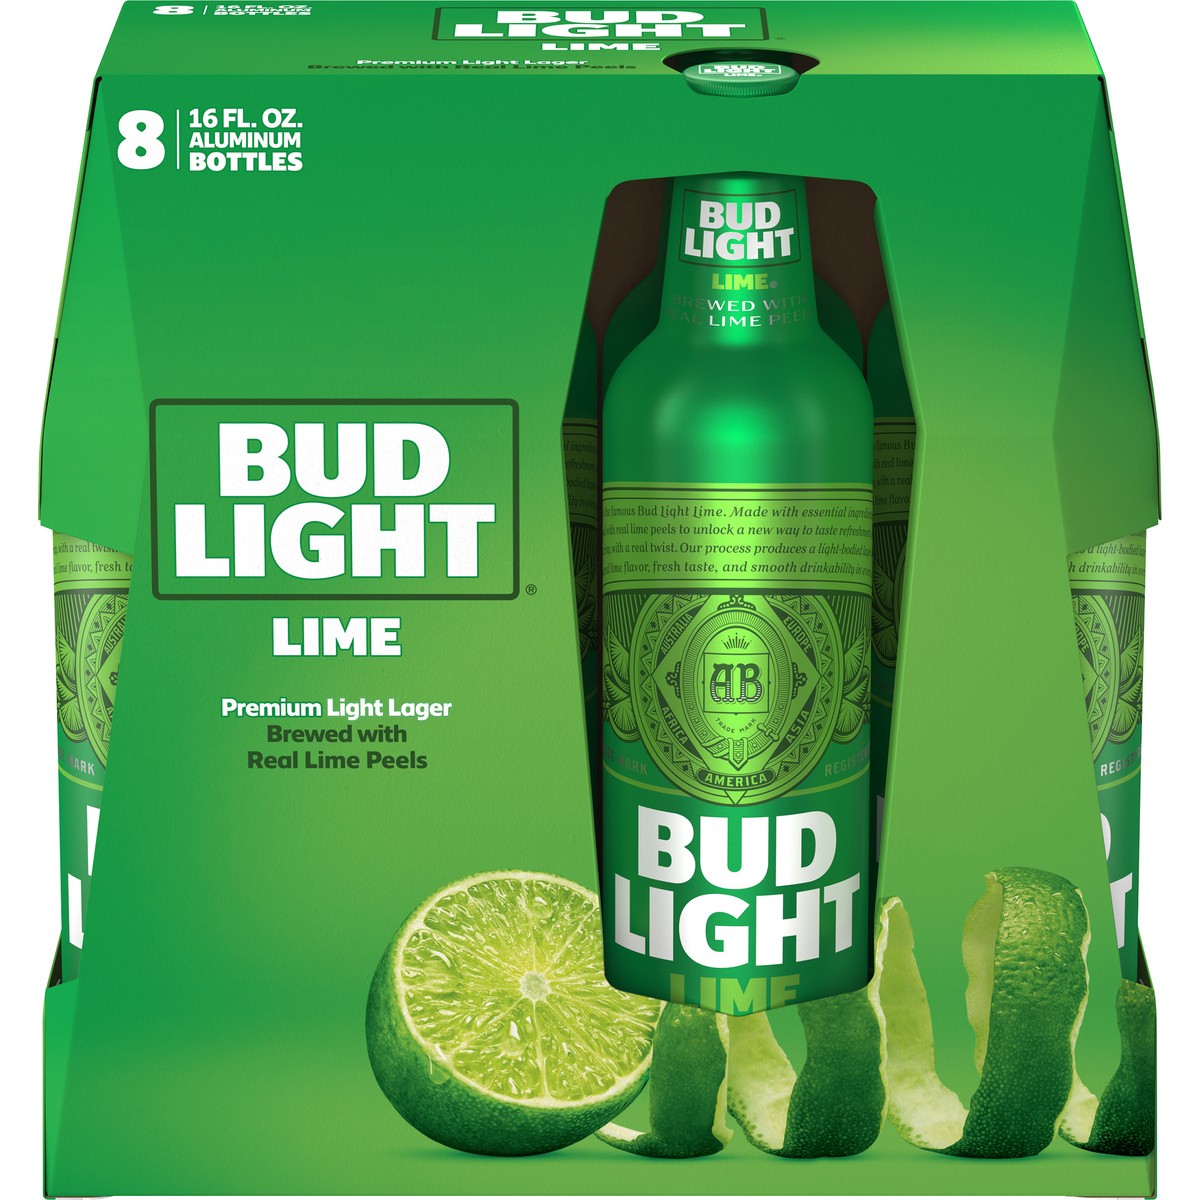 slide 1 of 3, Bud Light Lime Beer Aluminum, 4.2% ABV, 8 bottles / 16 fl oz